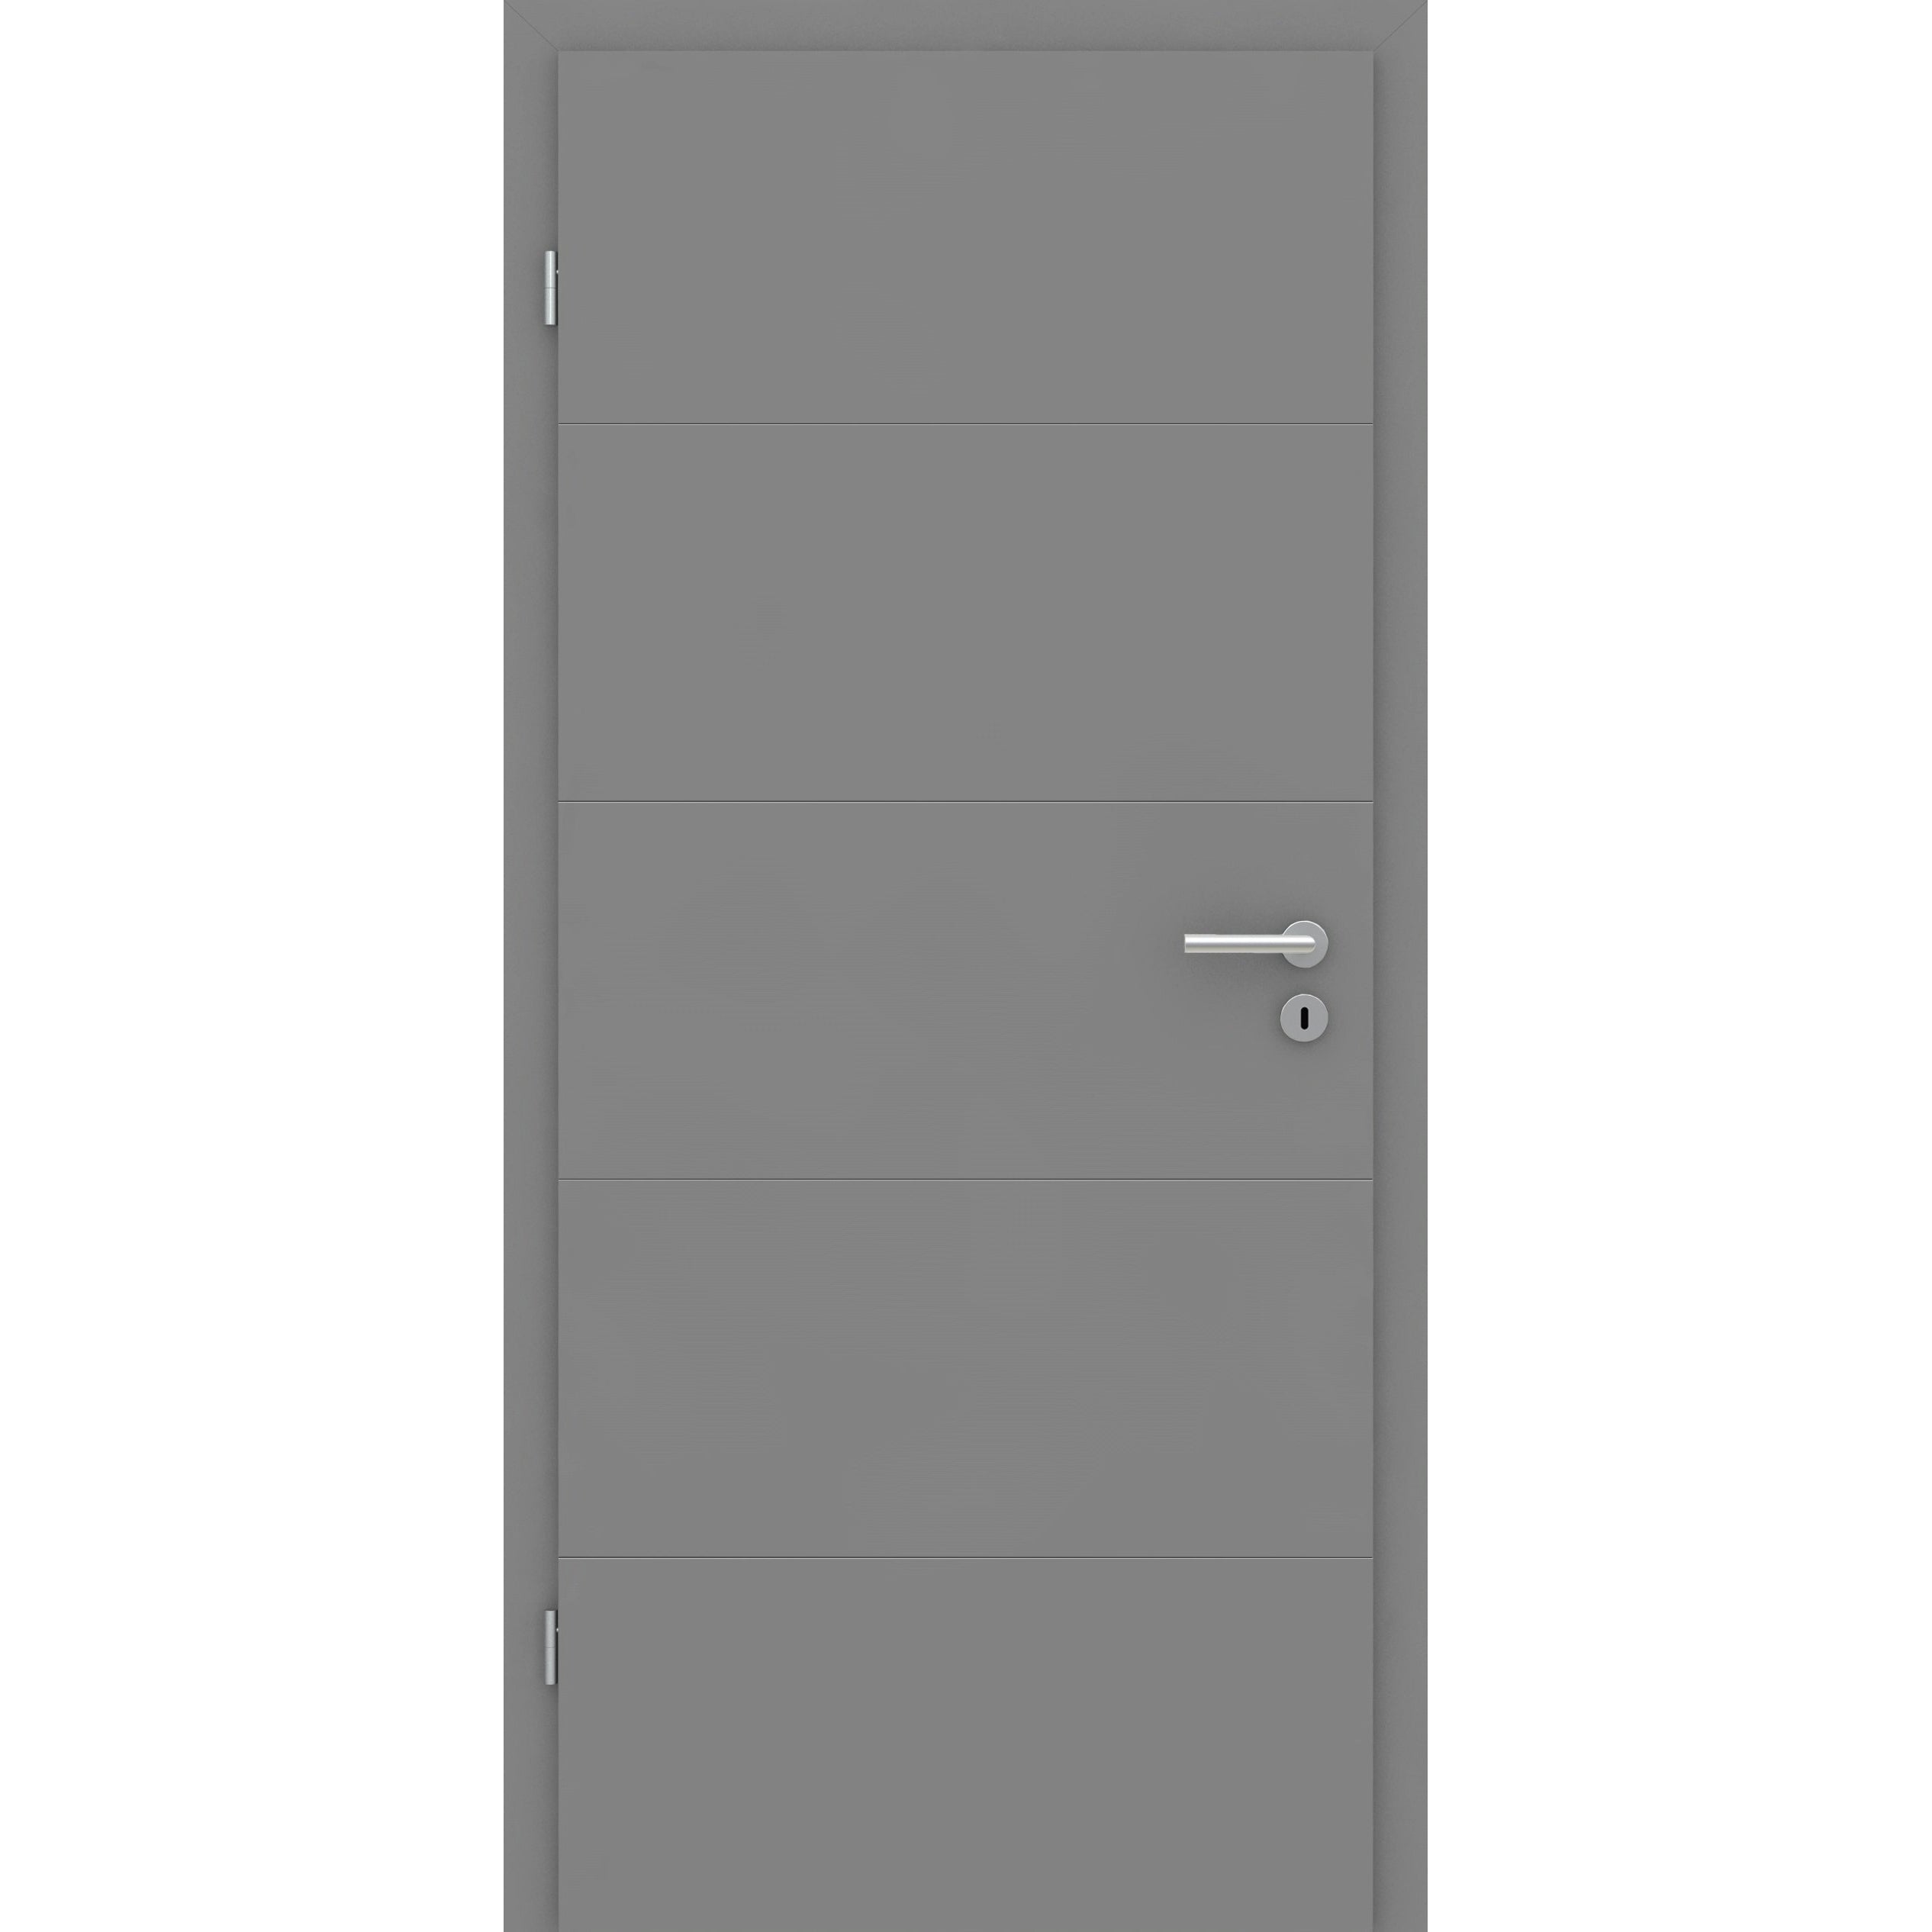 Zimmertür grau 4 Rillen quer Designkante - Modell Designtür Q47